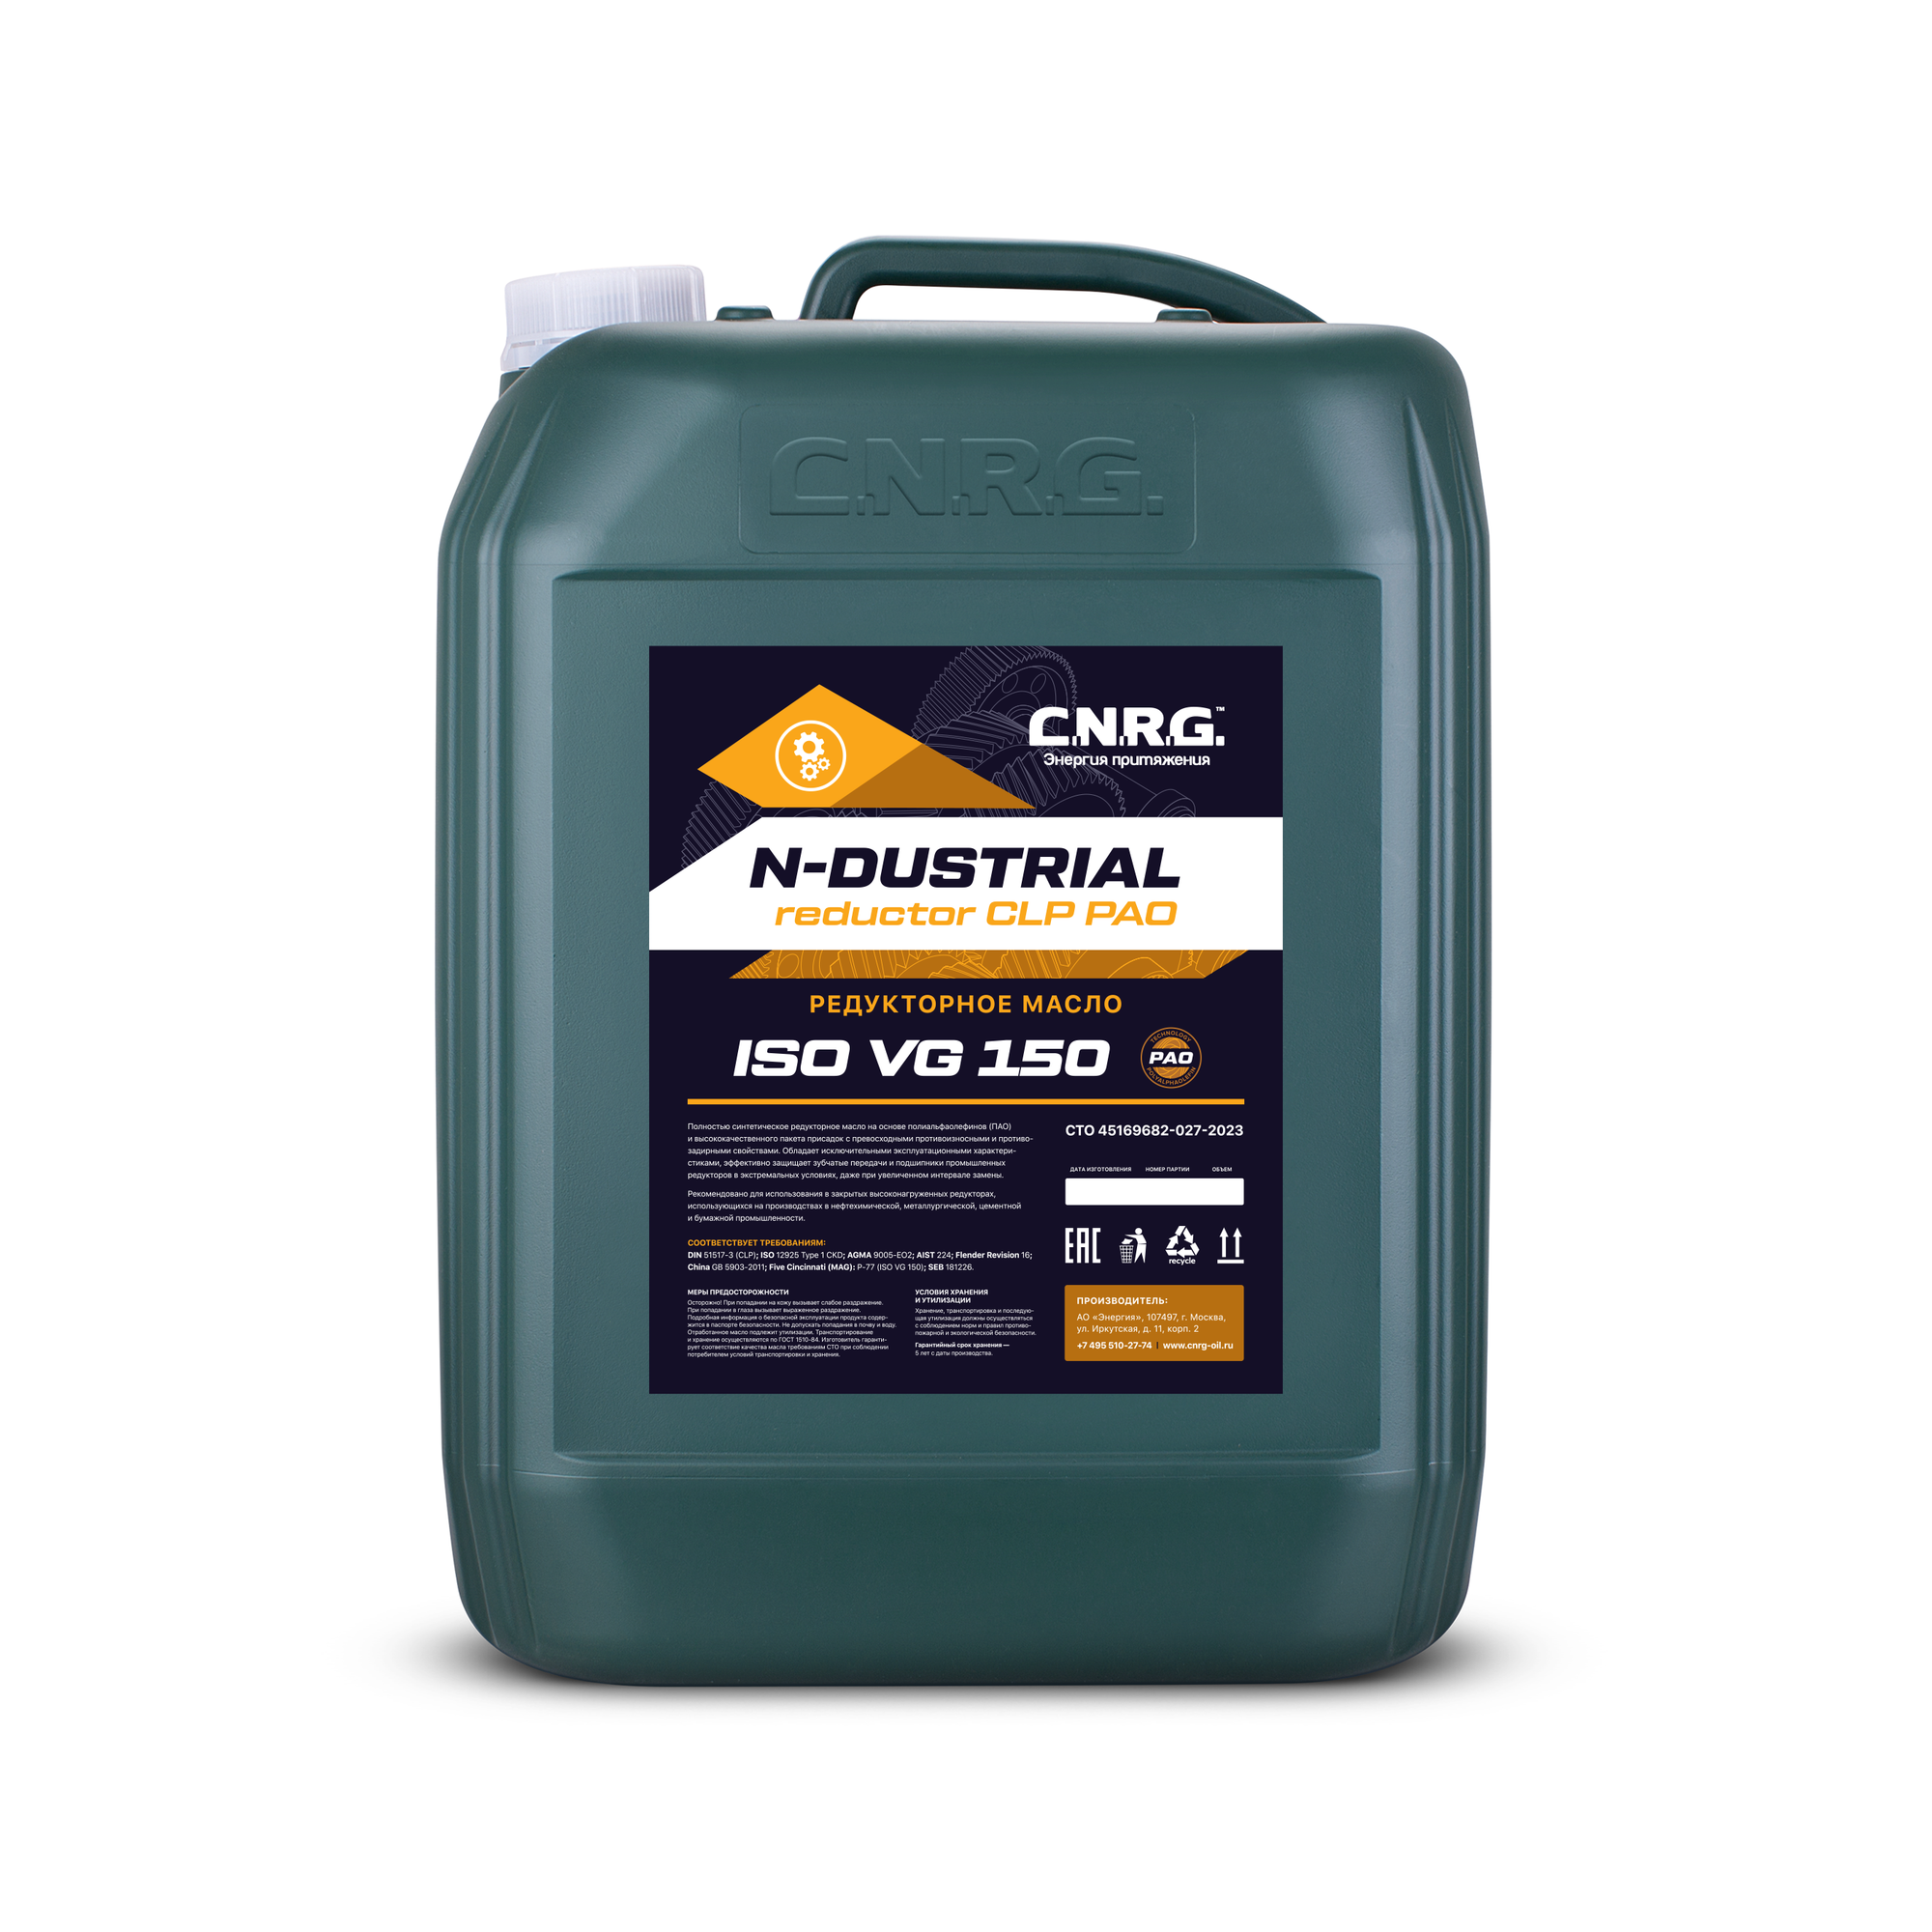 Индустриальное редукторное масло C.N.R.G. N-Dustrial Reductor CLP PAO 150 (кан. 20 л)